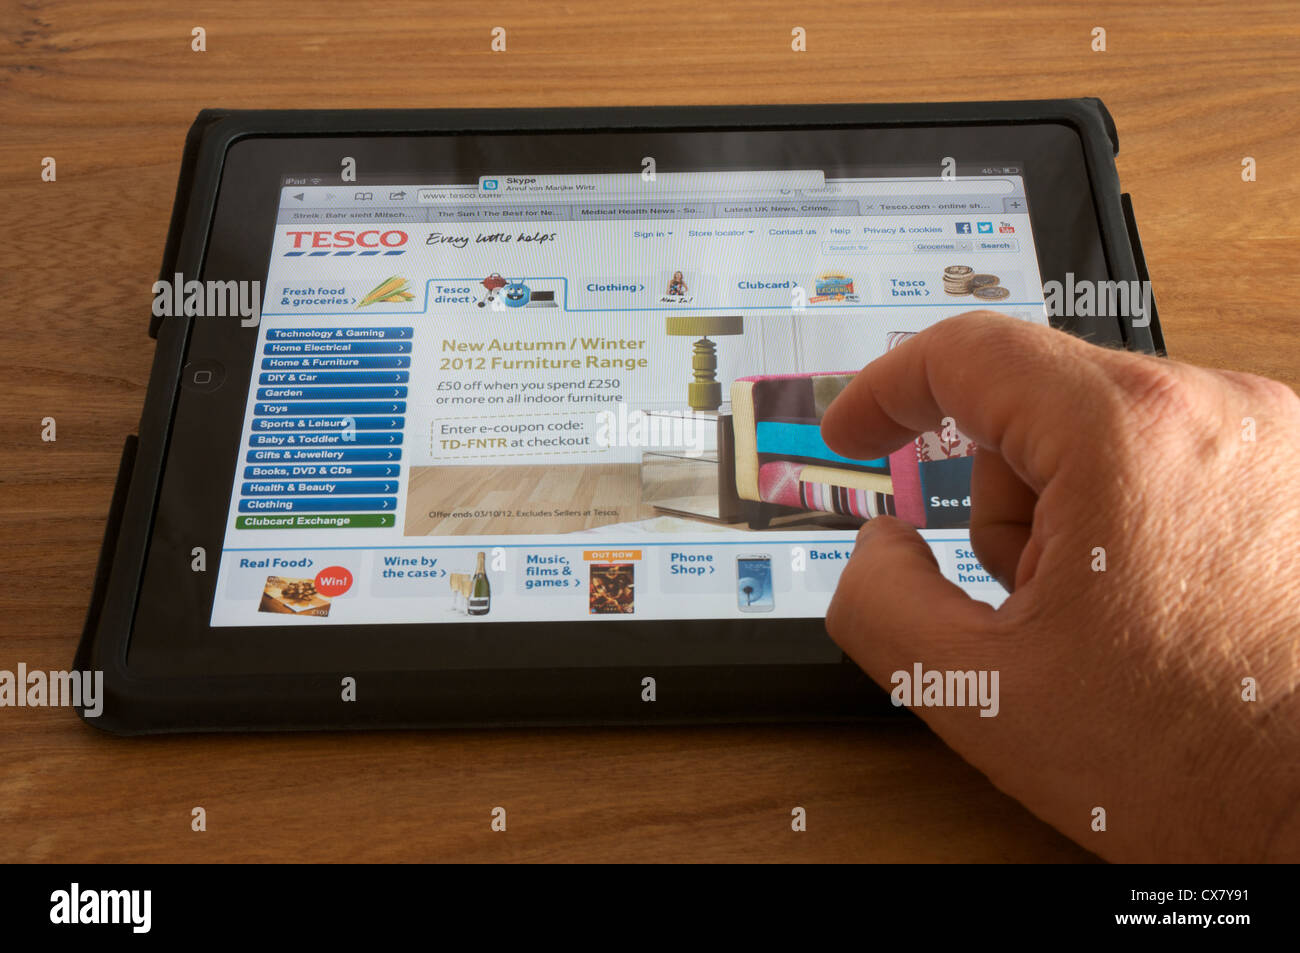 Tesco-Supermarkt-Homepage auf einem Tabletcomputer angezeigt Stockfoto